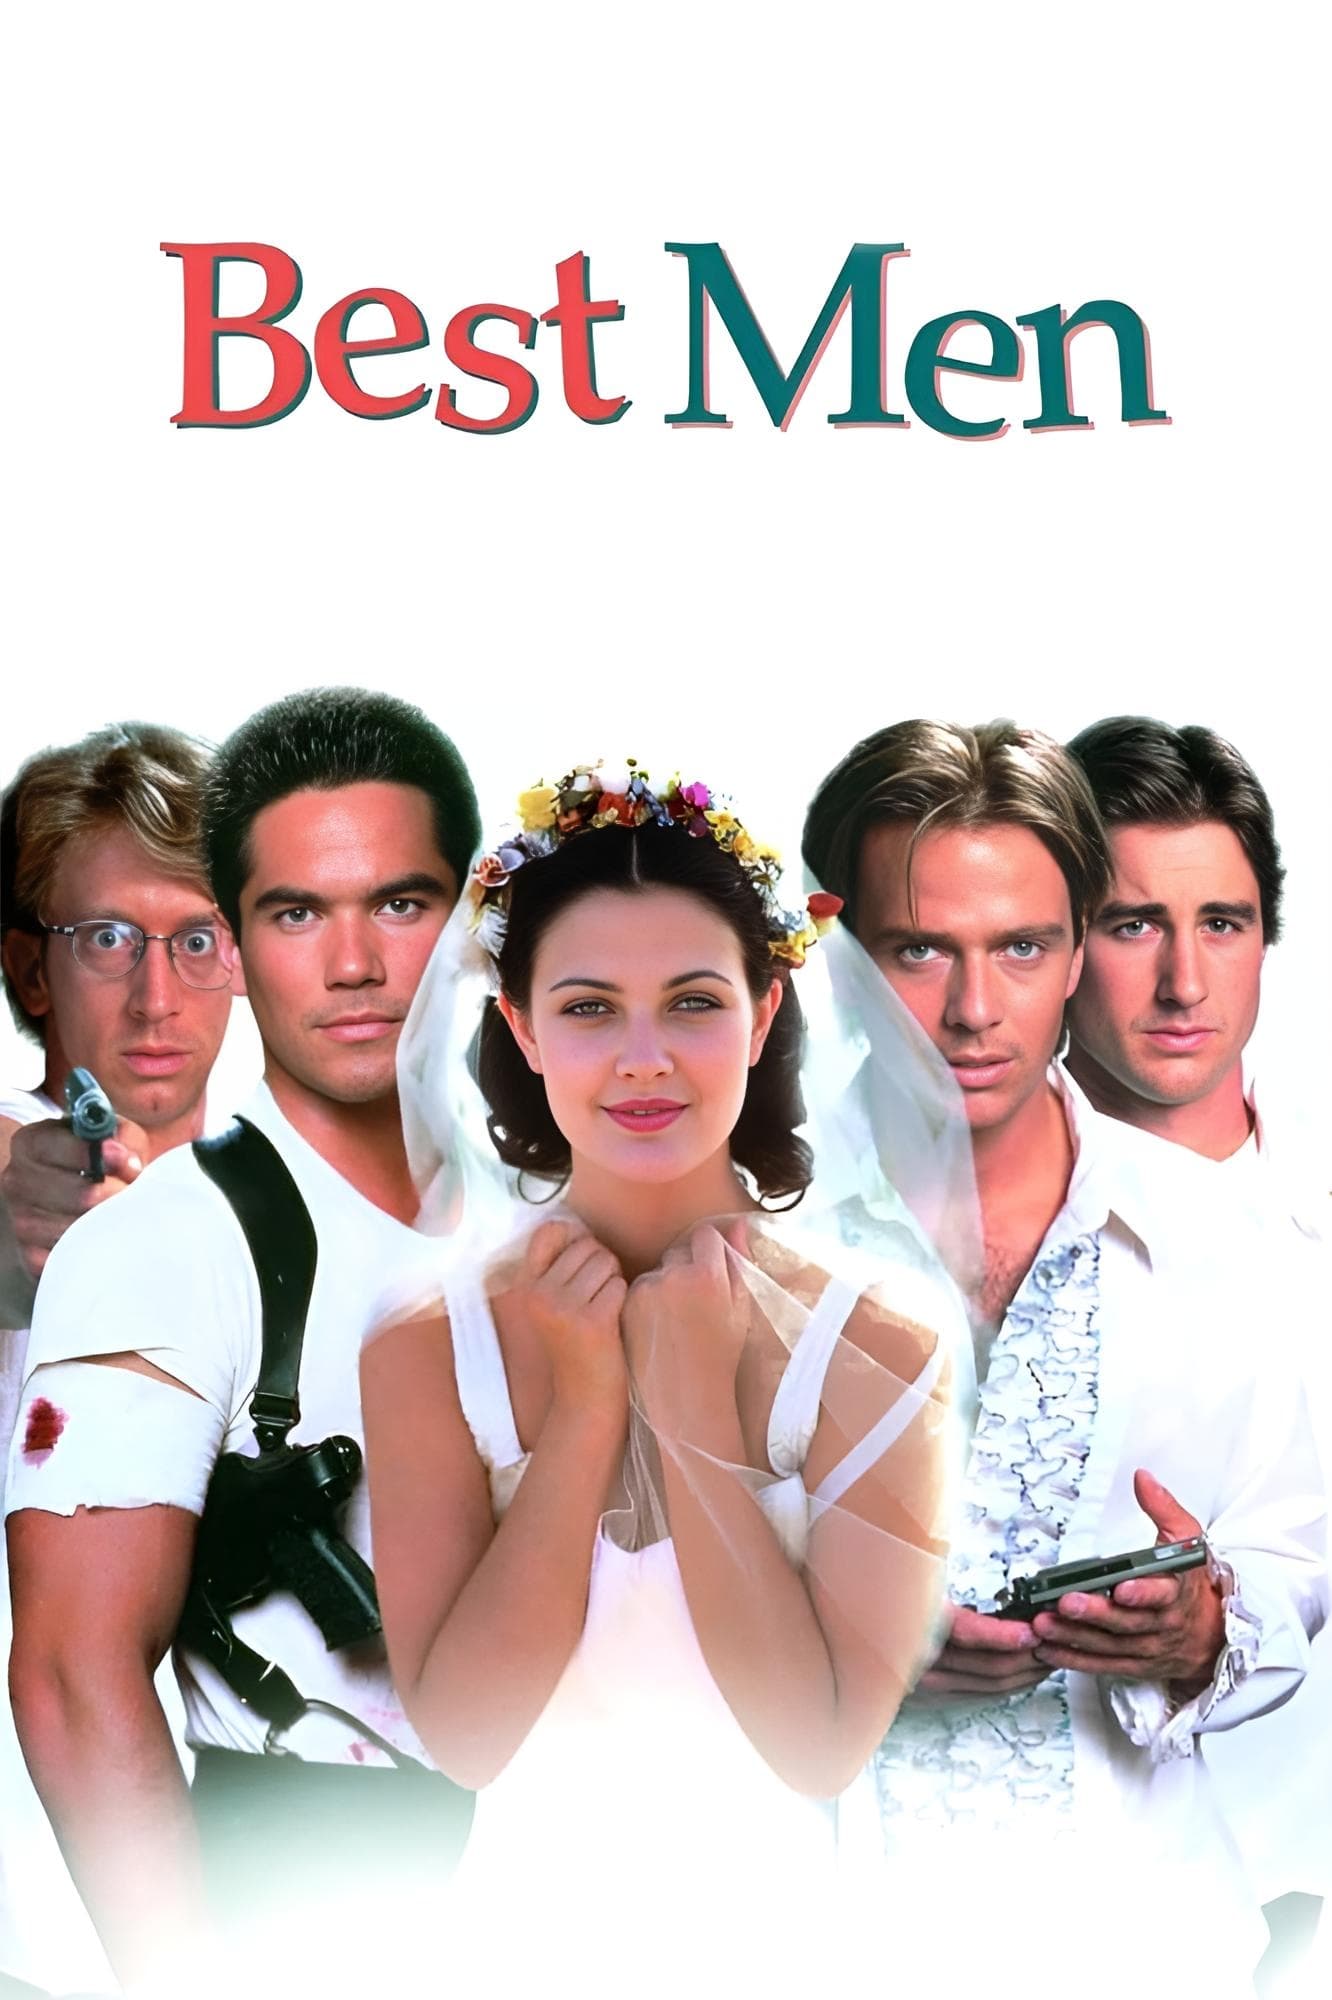 Best Men (1997)